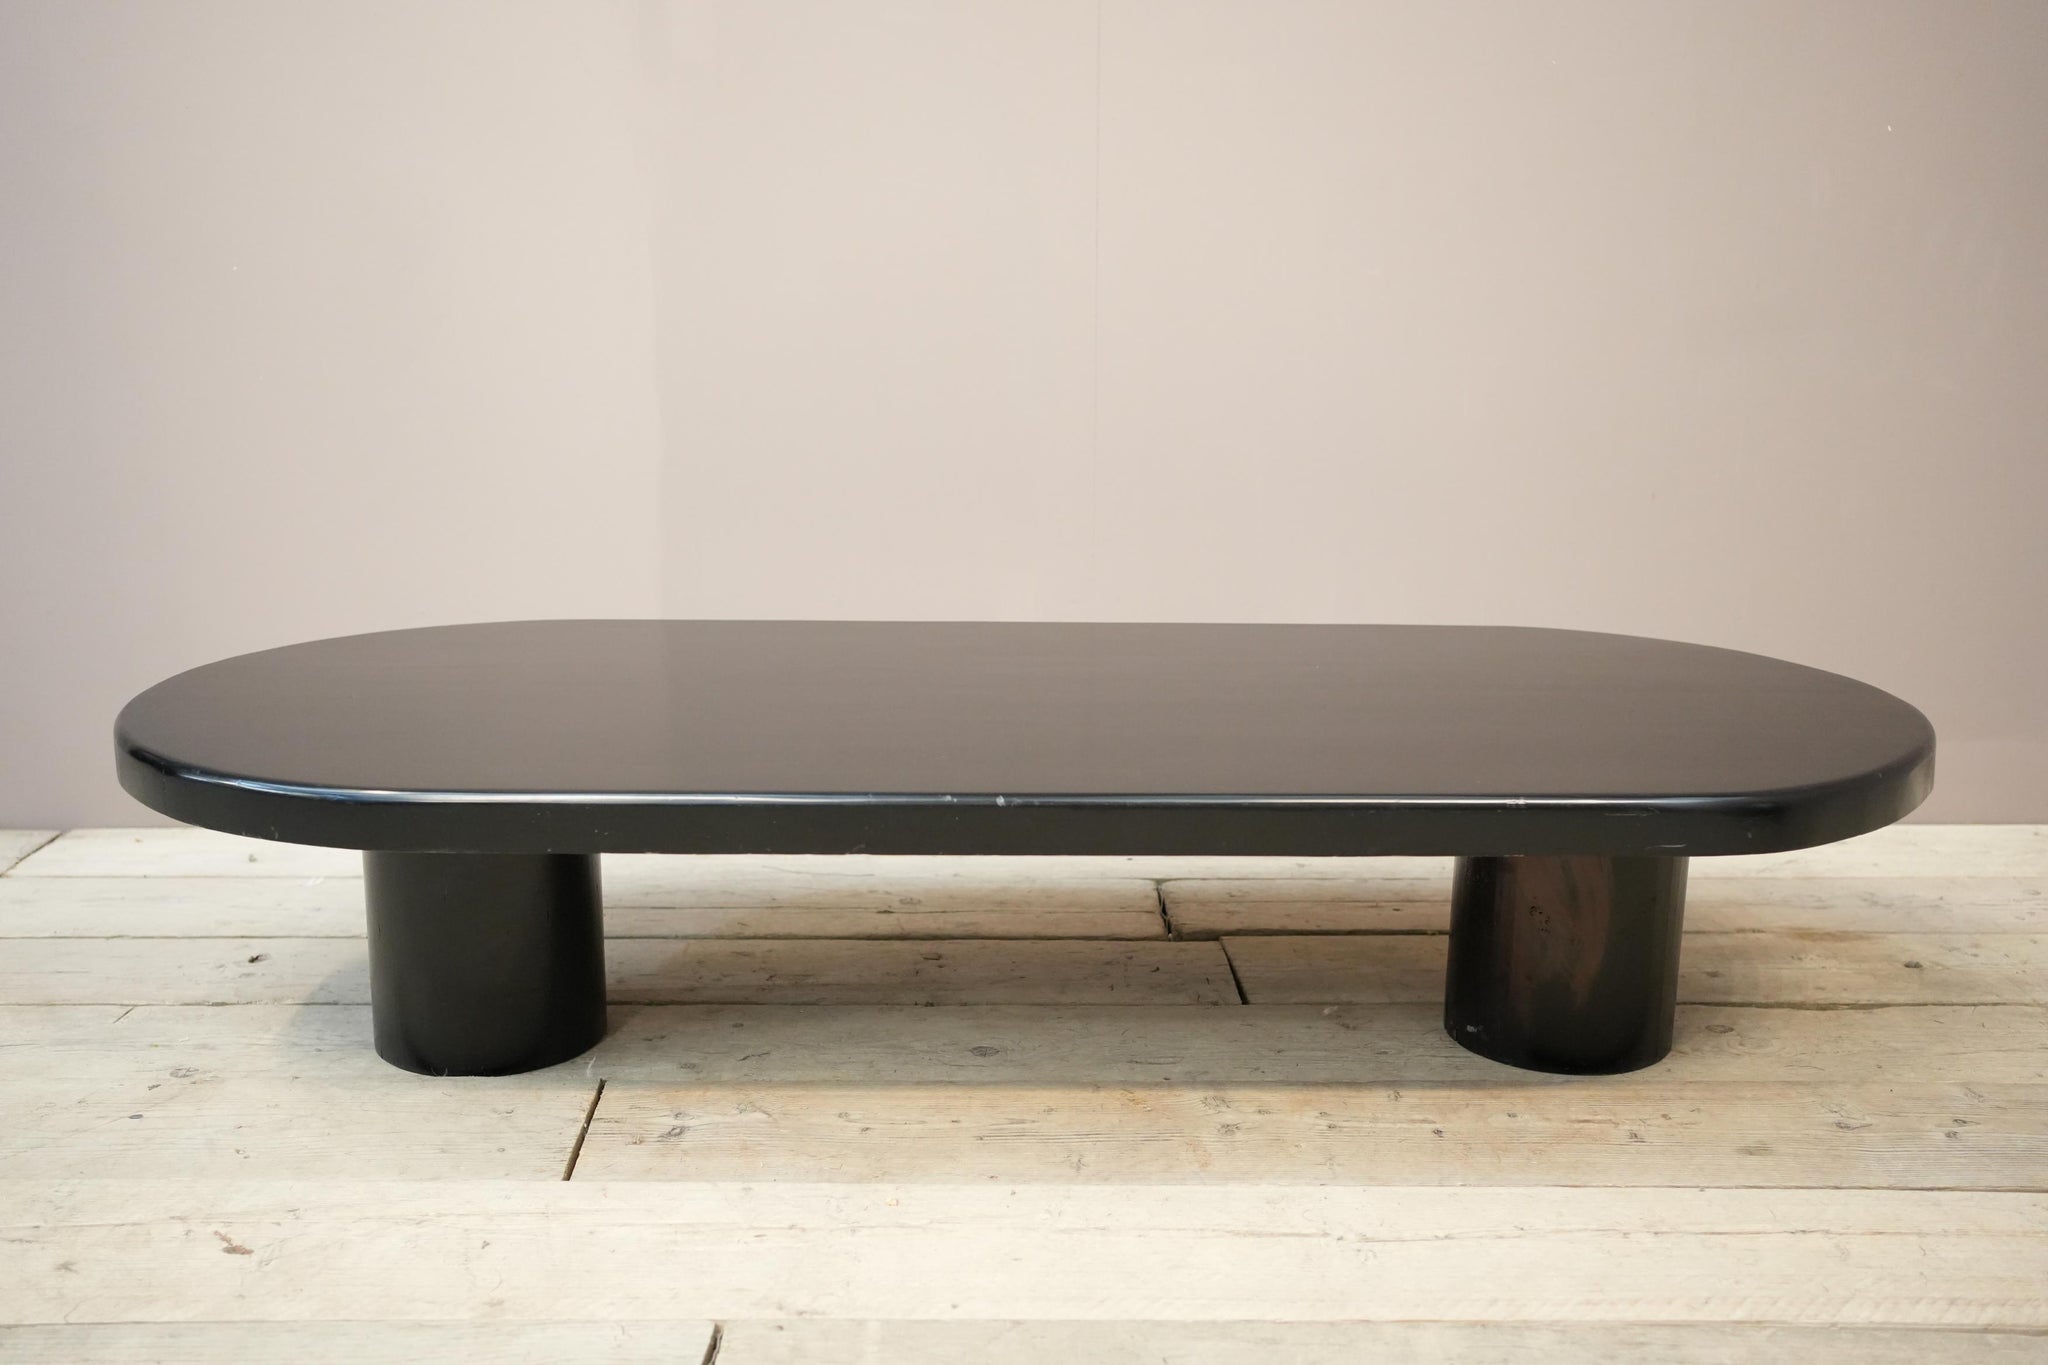 20th century Black lacquer architect design coffee table